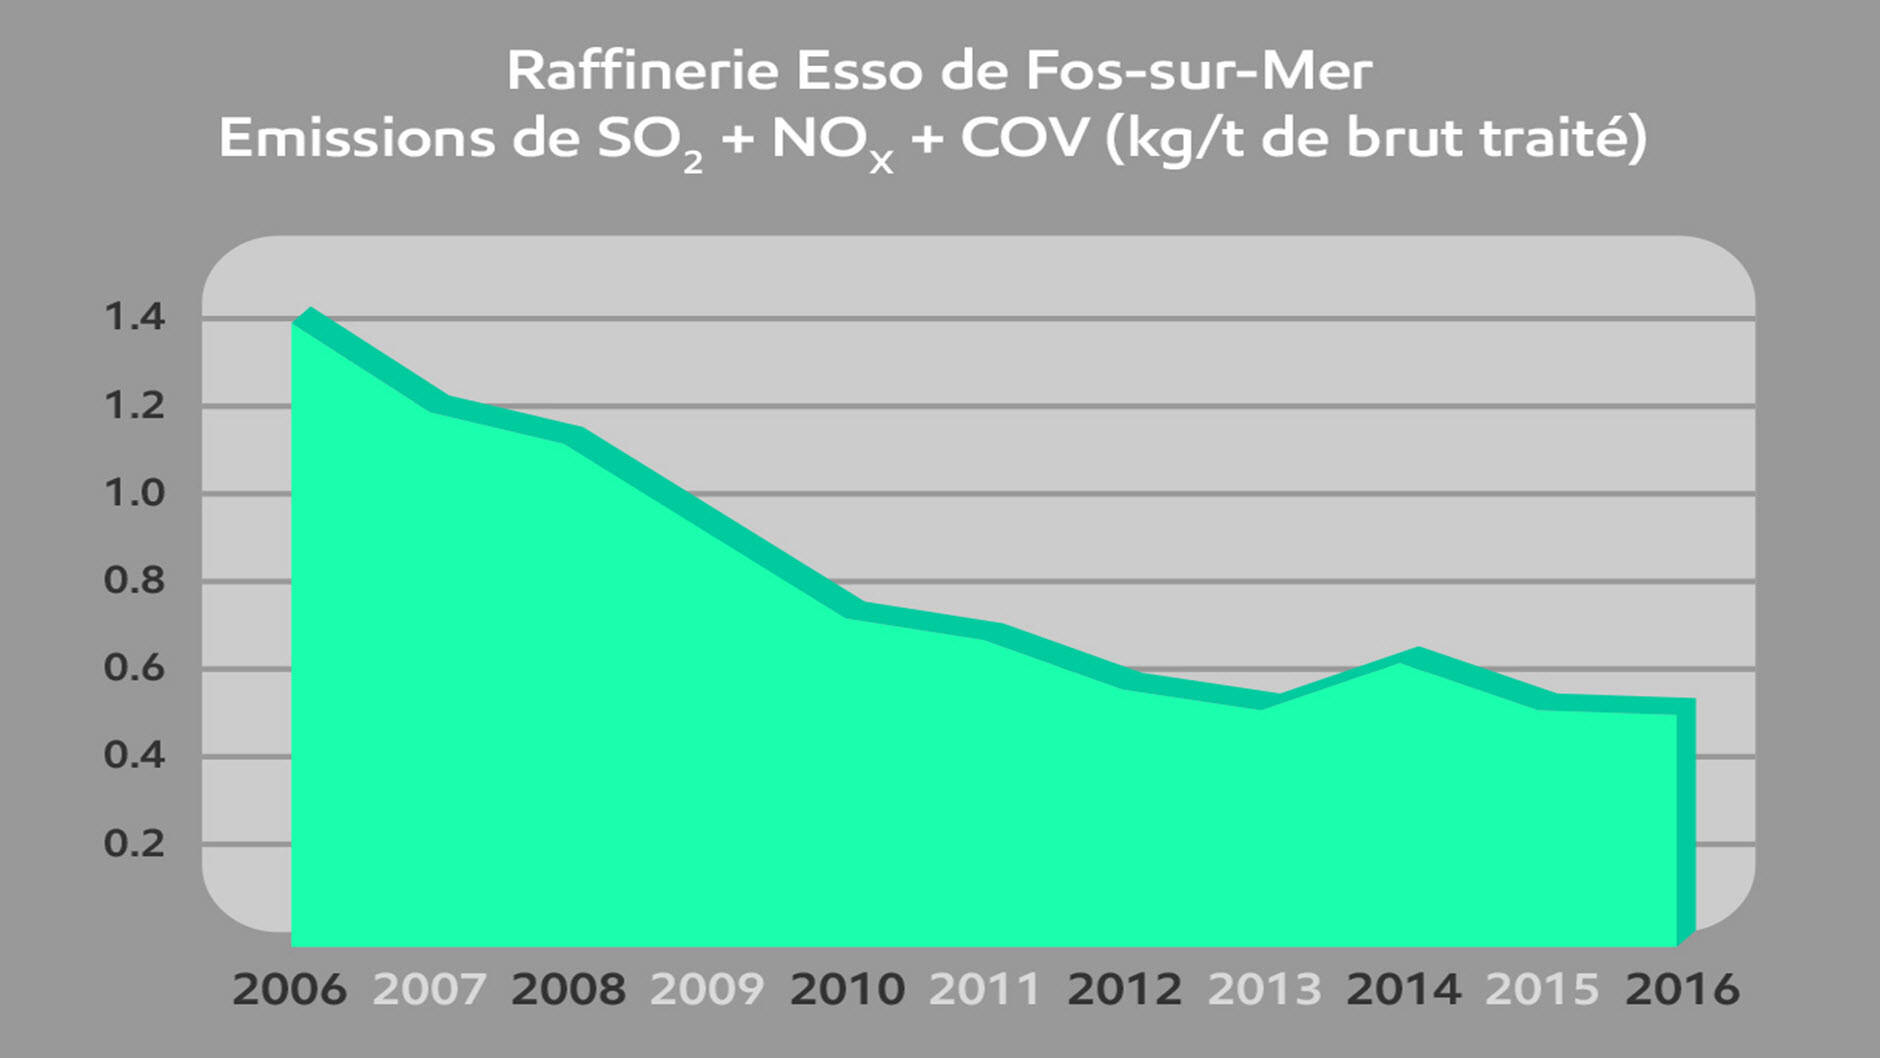 Somme des émissions de dioxyde de soufre + Oxyde d’Azote + Composés organiques volatils en kilogramme par tonne de brut traité depuis 2006.